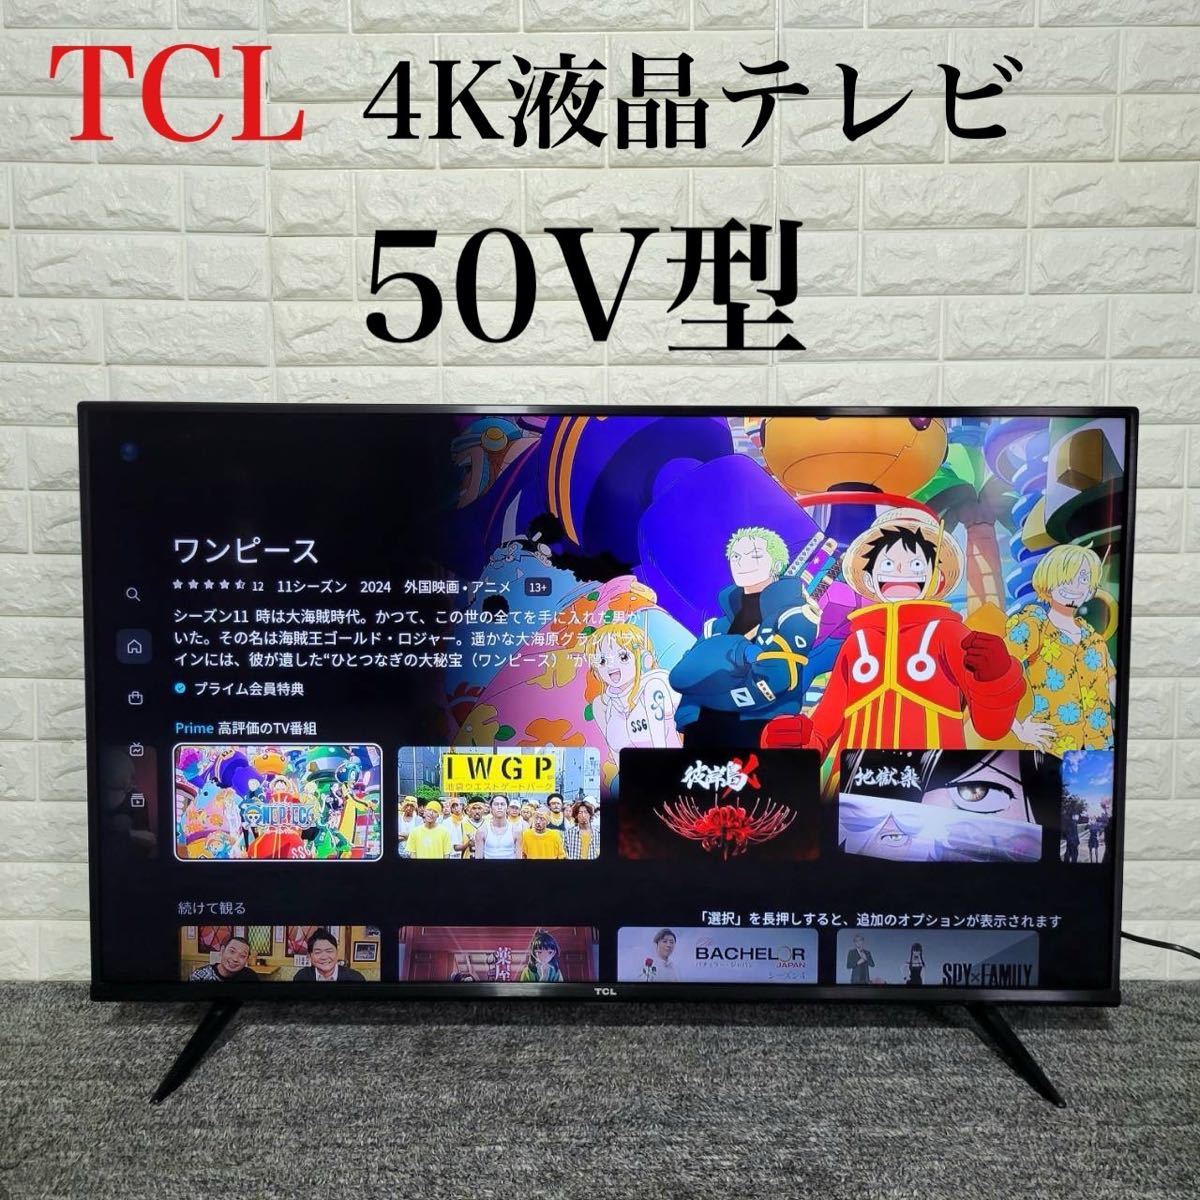 Yahoo!オークション - TCL 4K液晶テレビ 50P615 50V型 2021年...